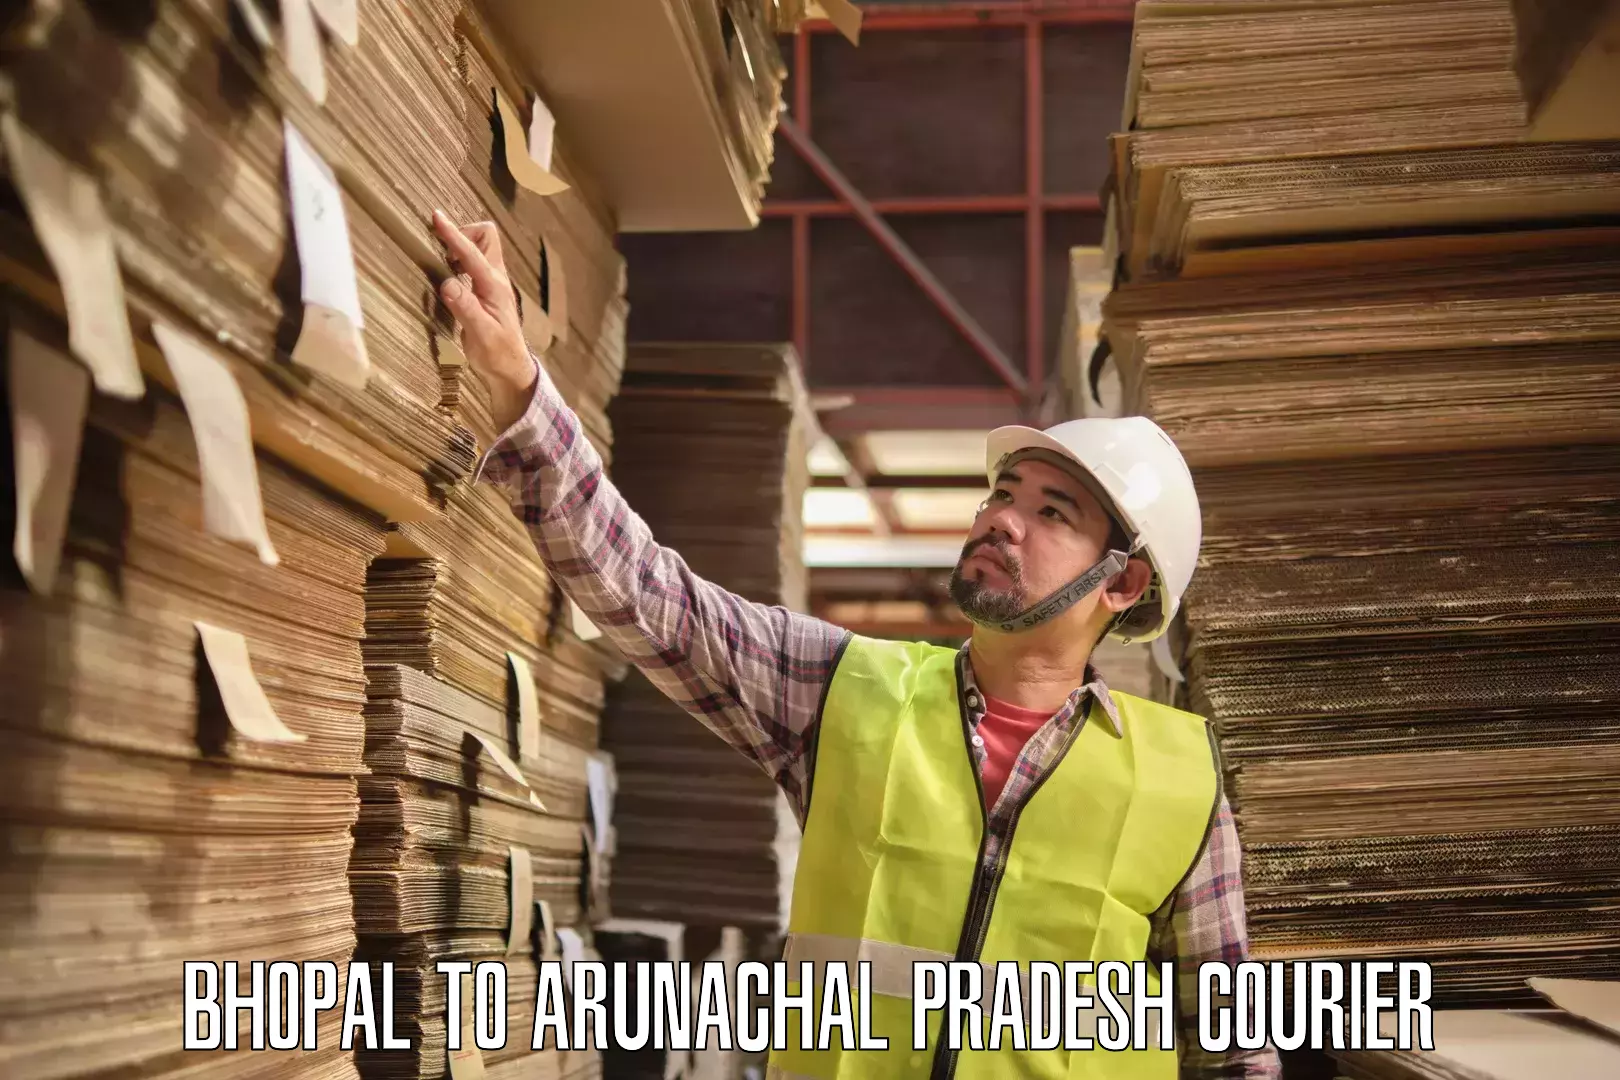 24-hour courier service Bhopal to Arunachal Pradesh